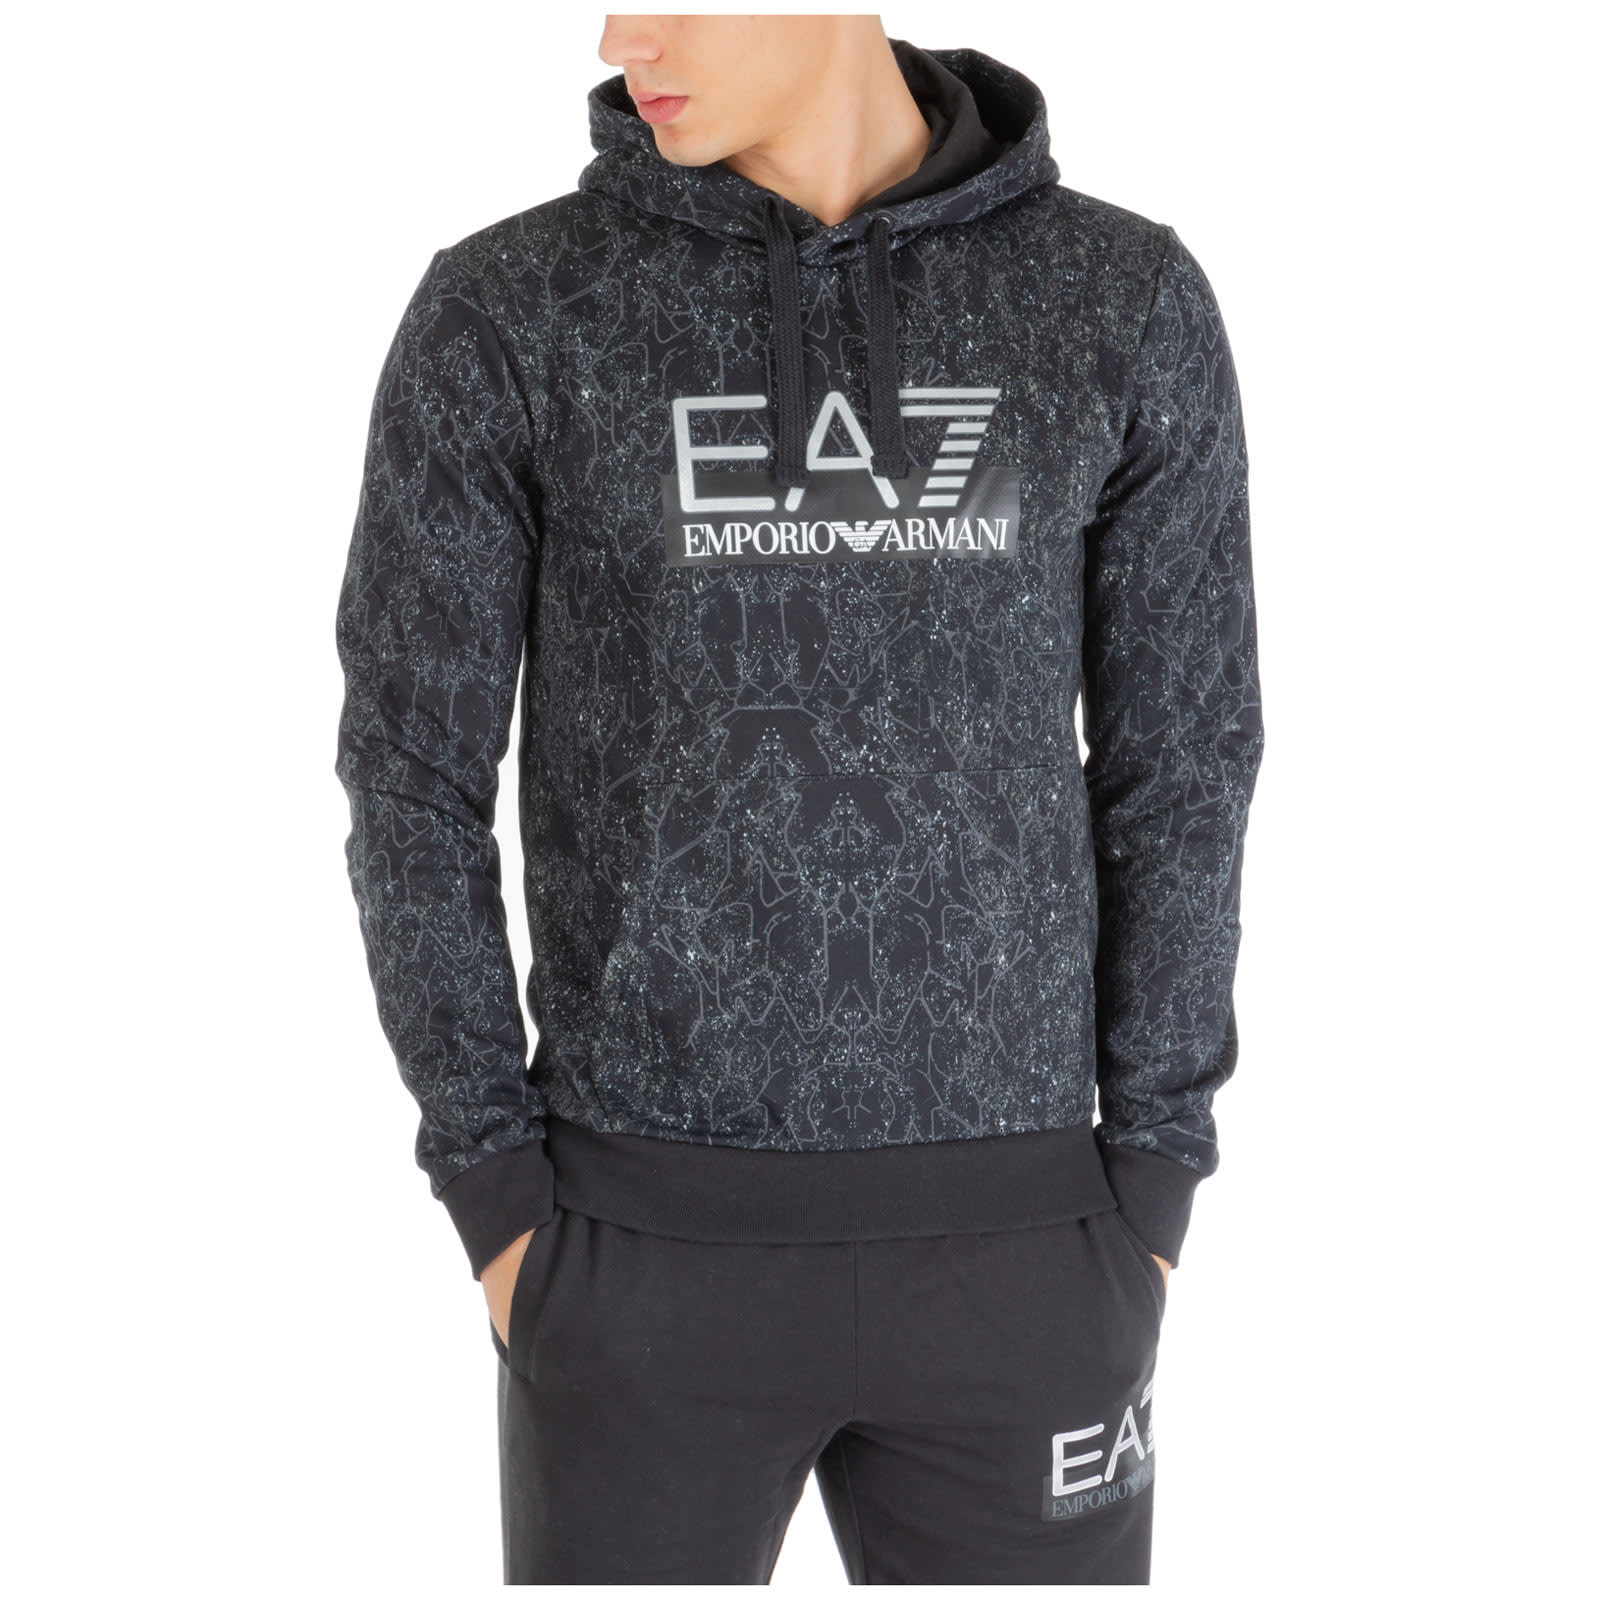 ea7 sweatshirt